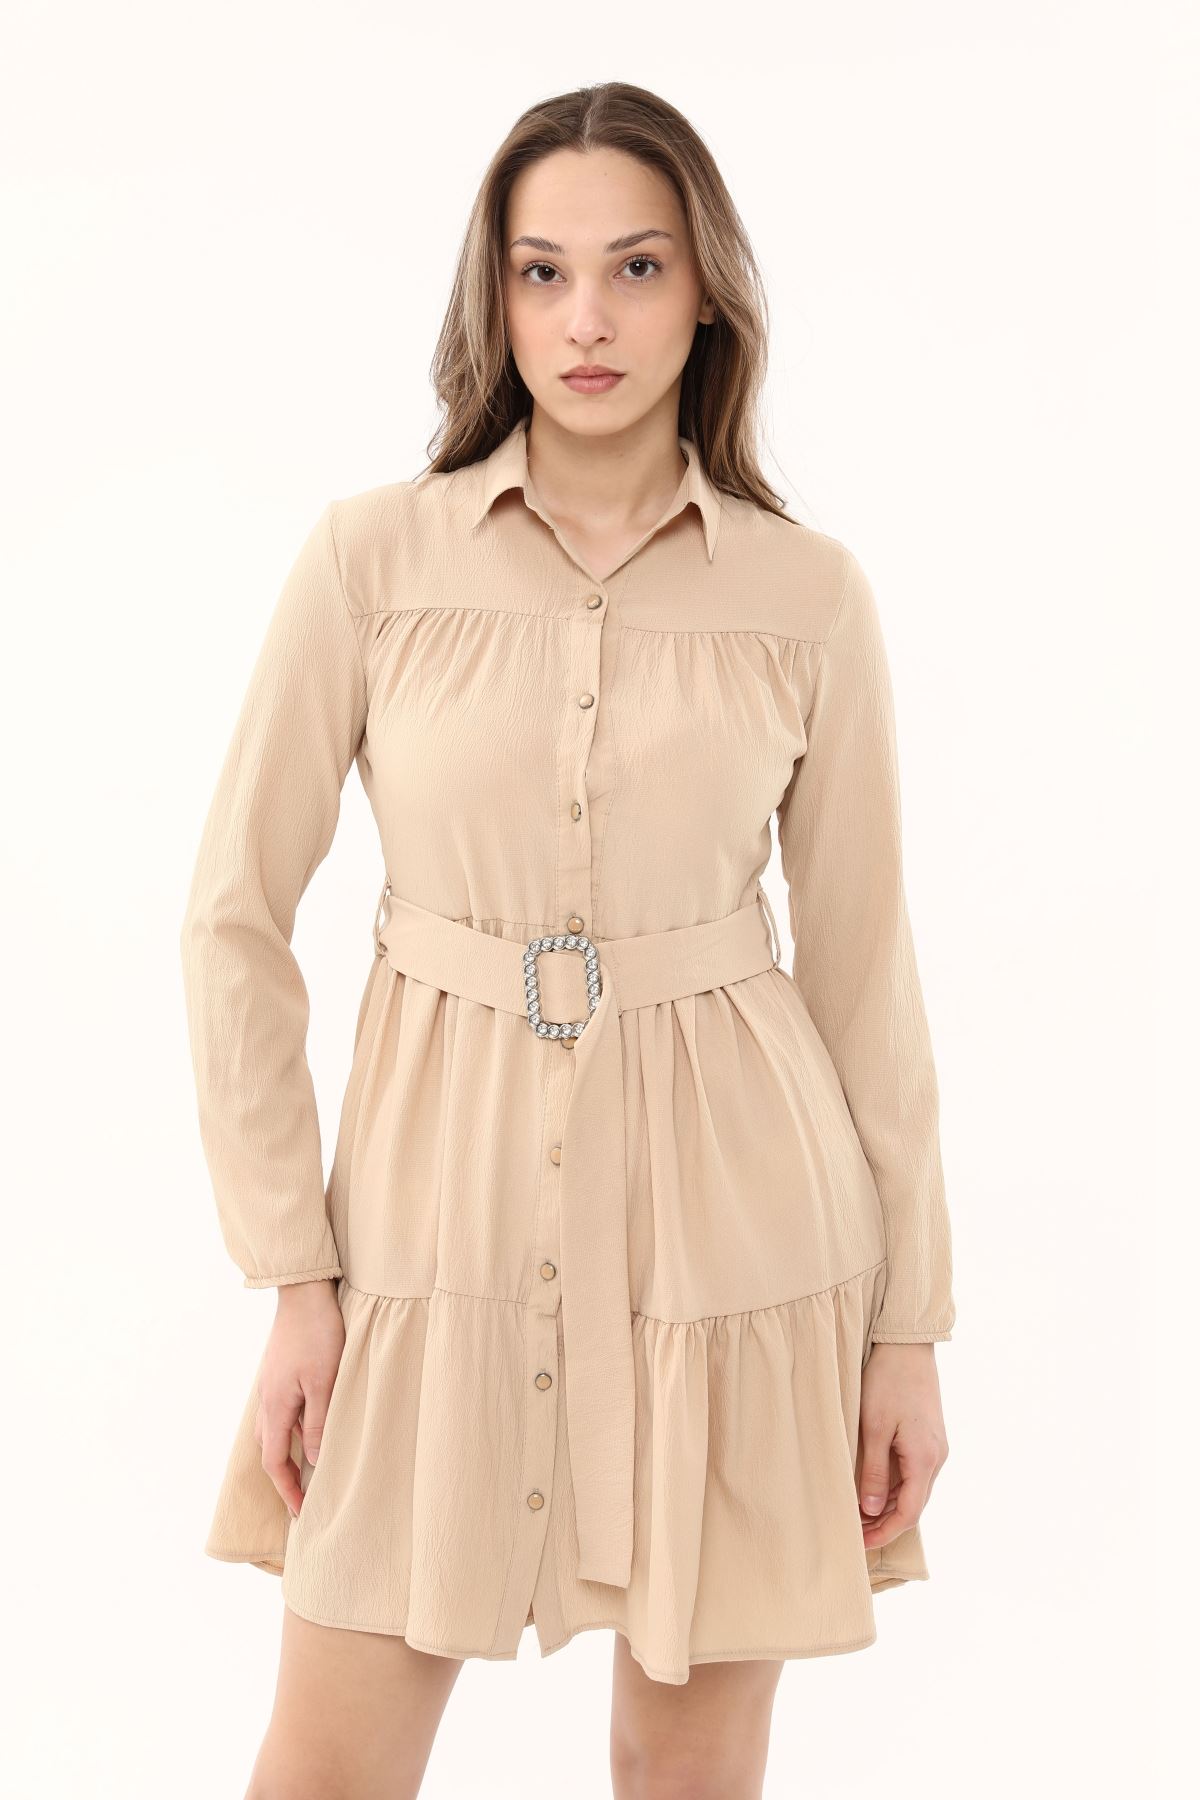 Women's Buttoned Dress with Waist Belt